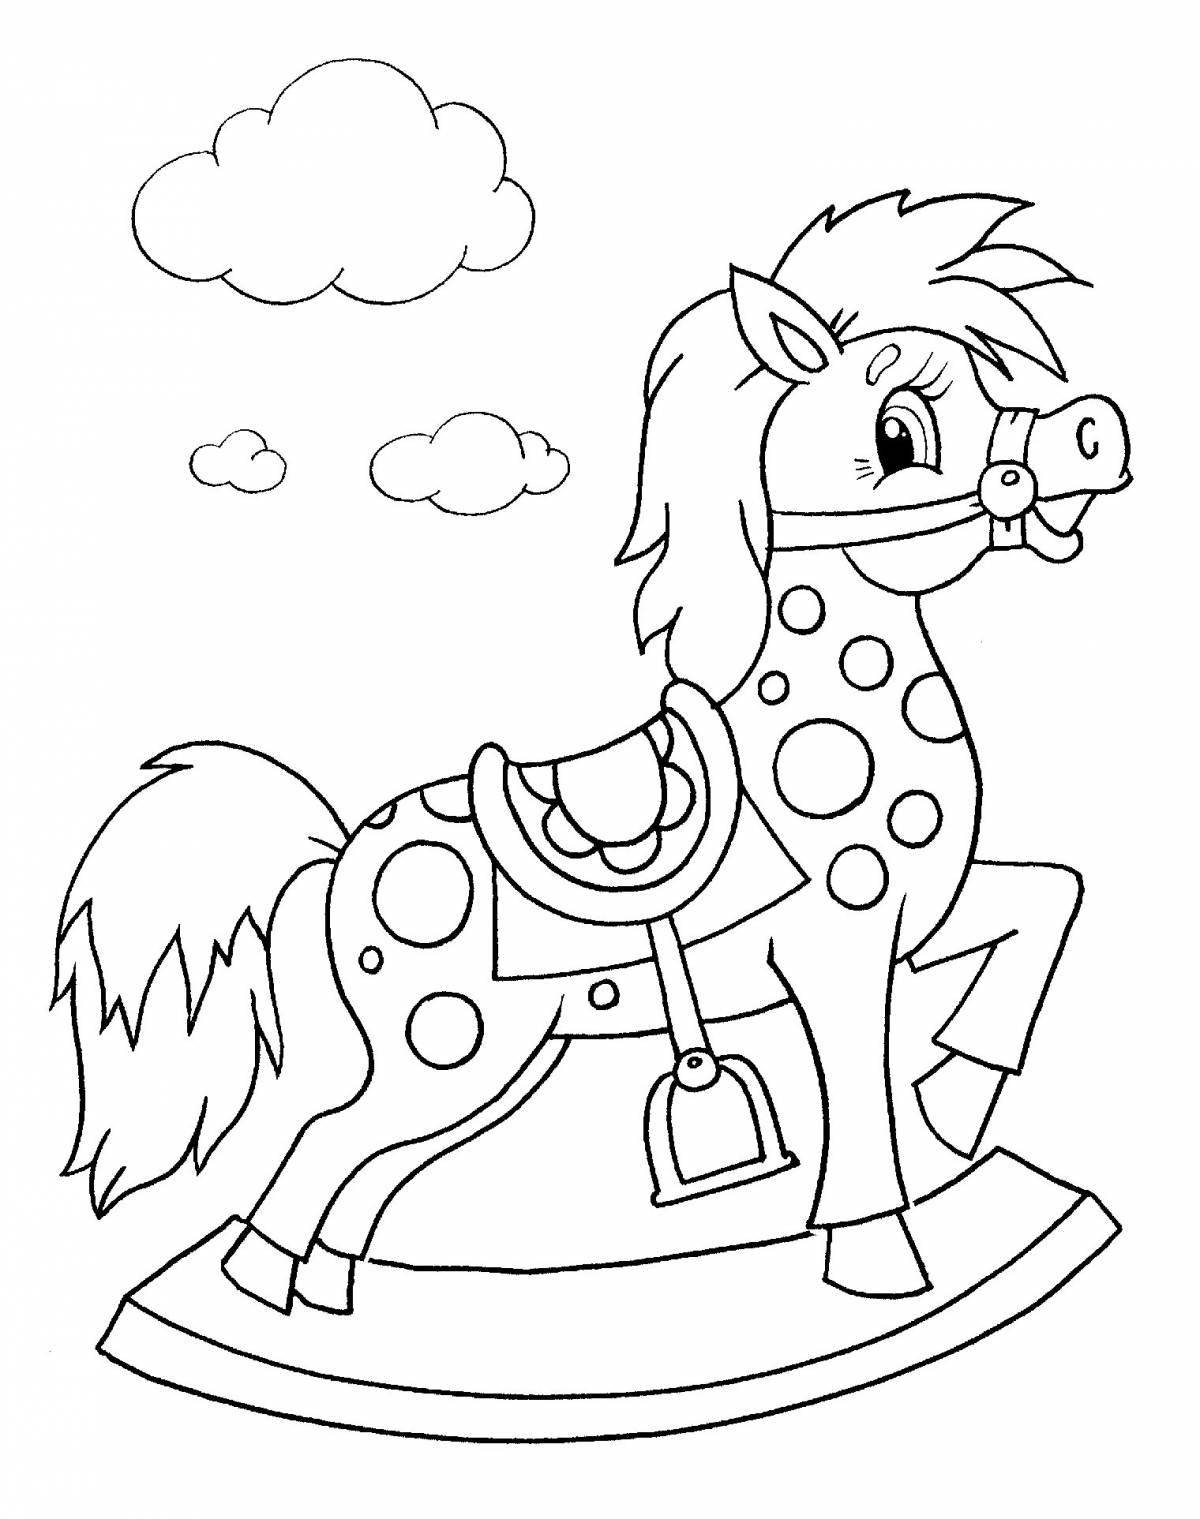 Большая раскраска лошадь для детей 2-3 лет